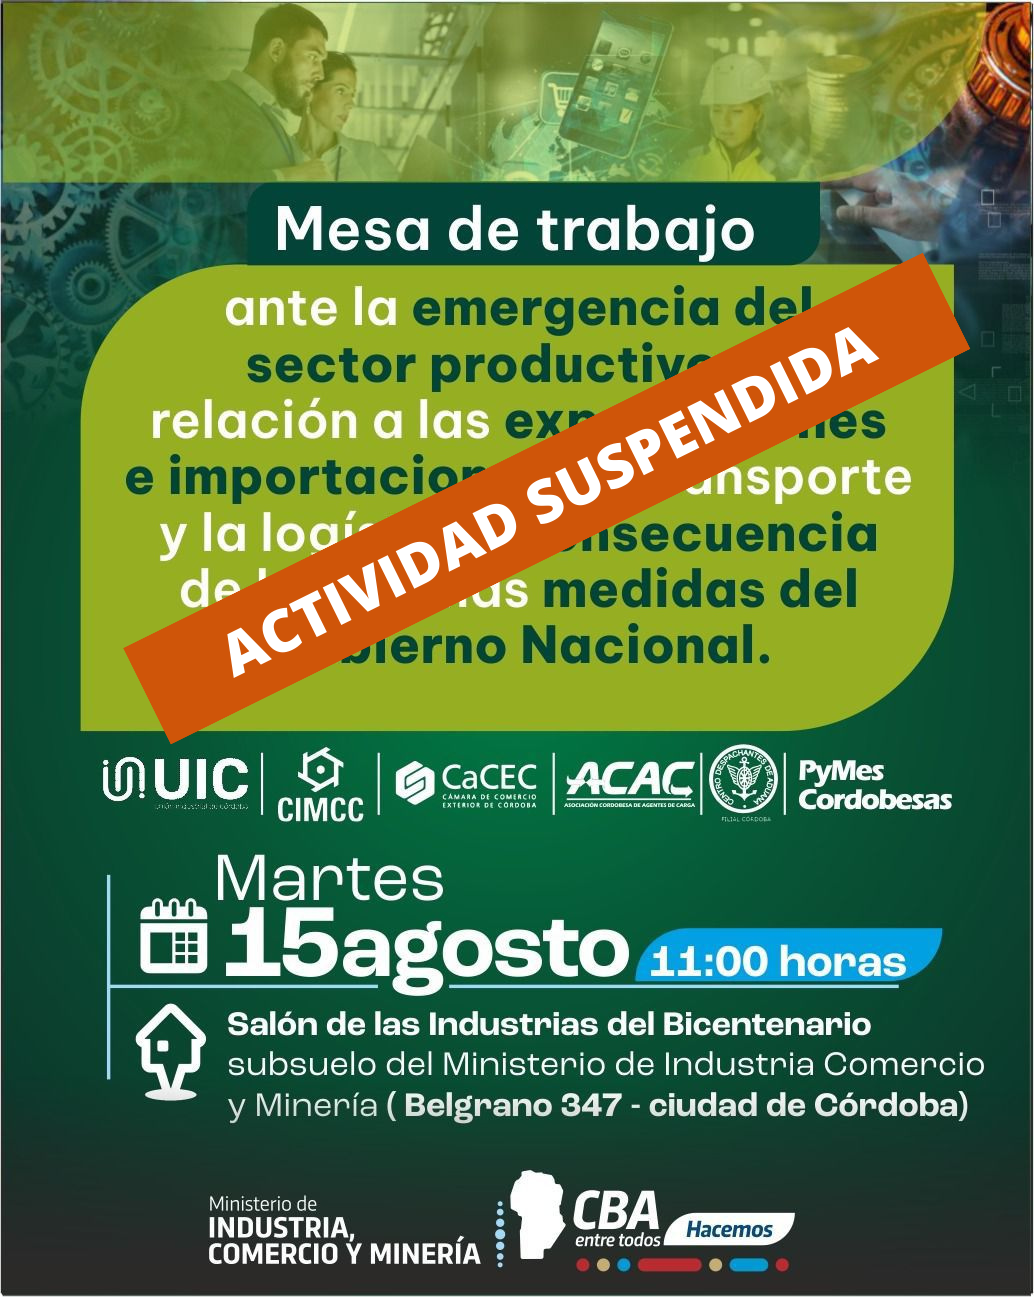 ATENCIÓN - ACTIVIDAD SUSPENDIDA //2da. reunión de trabajo Sector Productivo de Córdoba